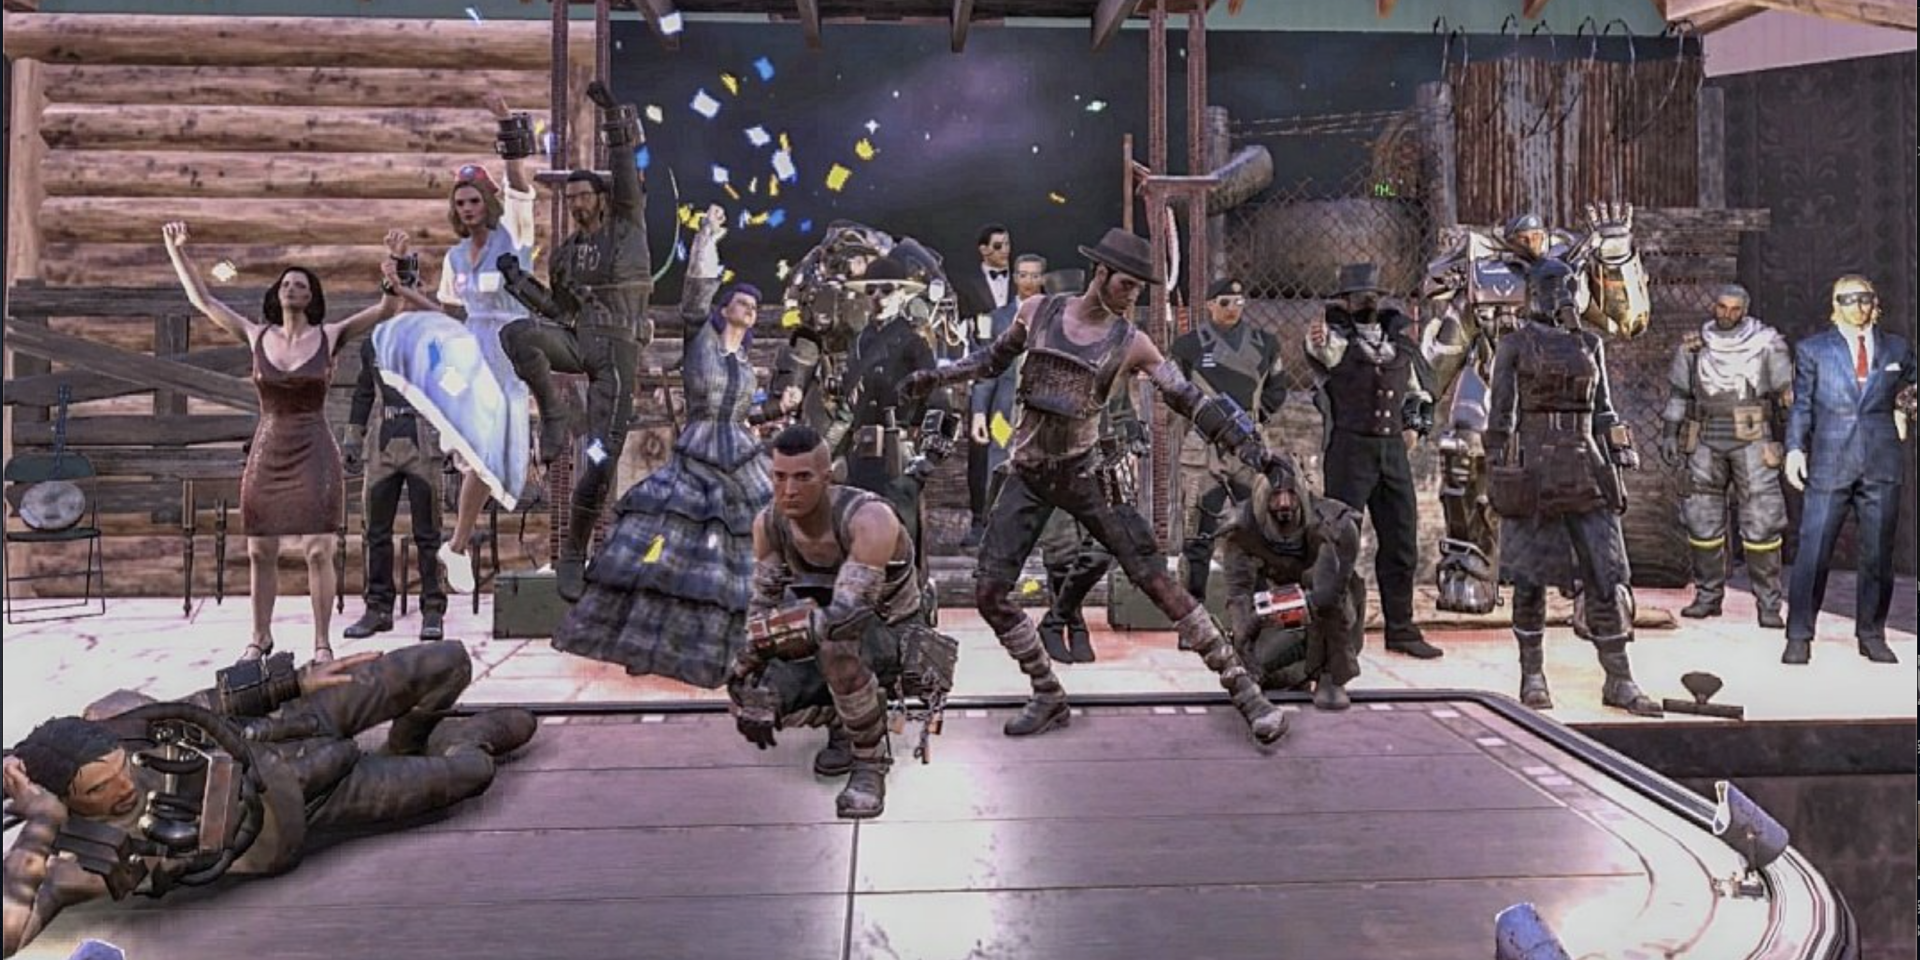 Les artistes saluent la foule après la représentation de « Roméo et Juliette » dans « Fallout 76 » par The Wasteland Theatre Company. Deux membres de la troupe sont chargé d’assurer la sécurité du spectacle afin de repousser les potentielles attaques de mutants ou de créature malveillantes du jeu durant  le spectacle.